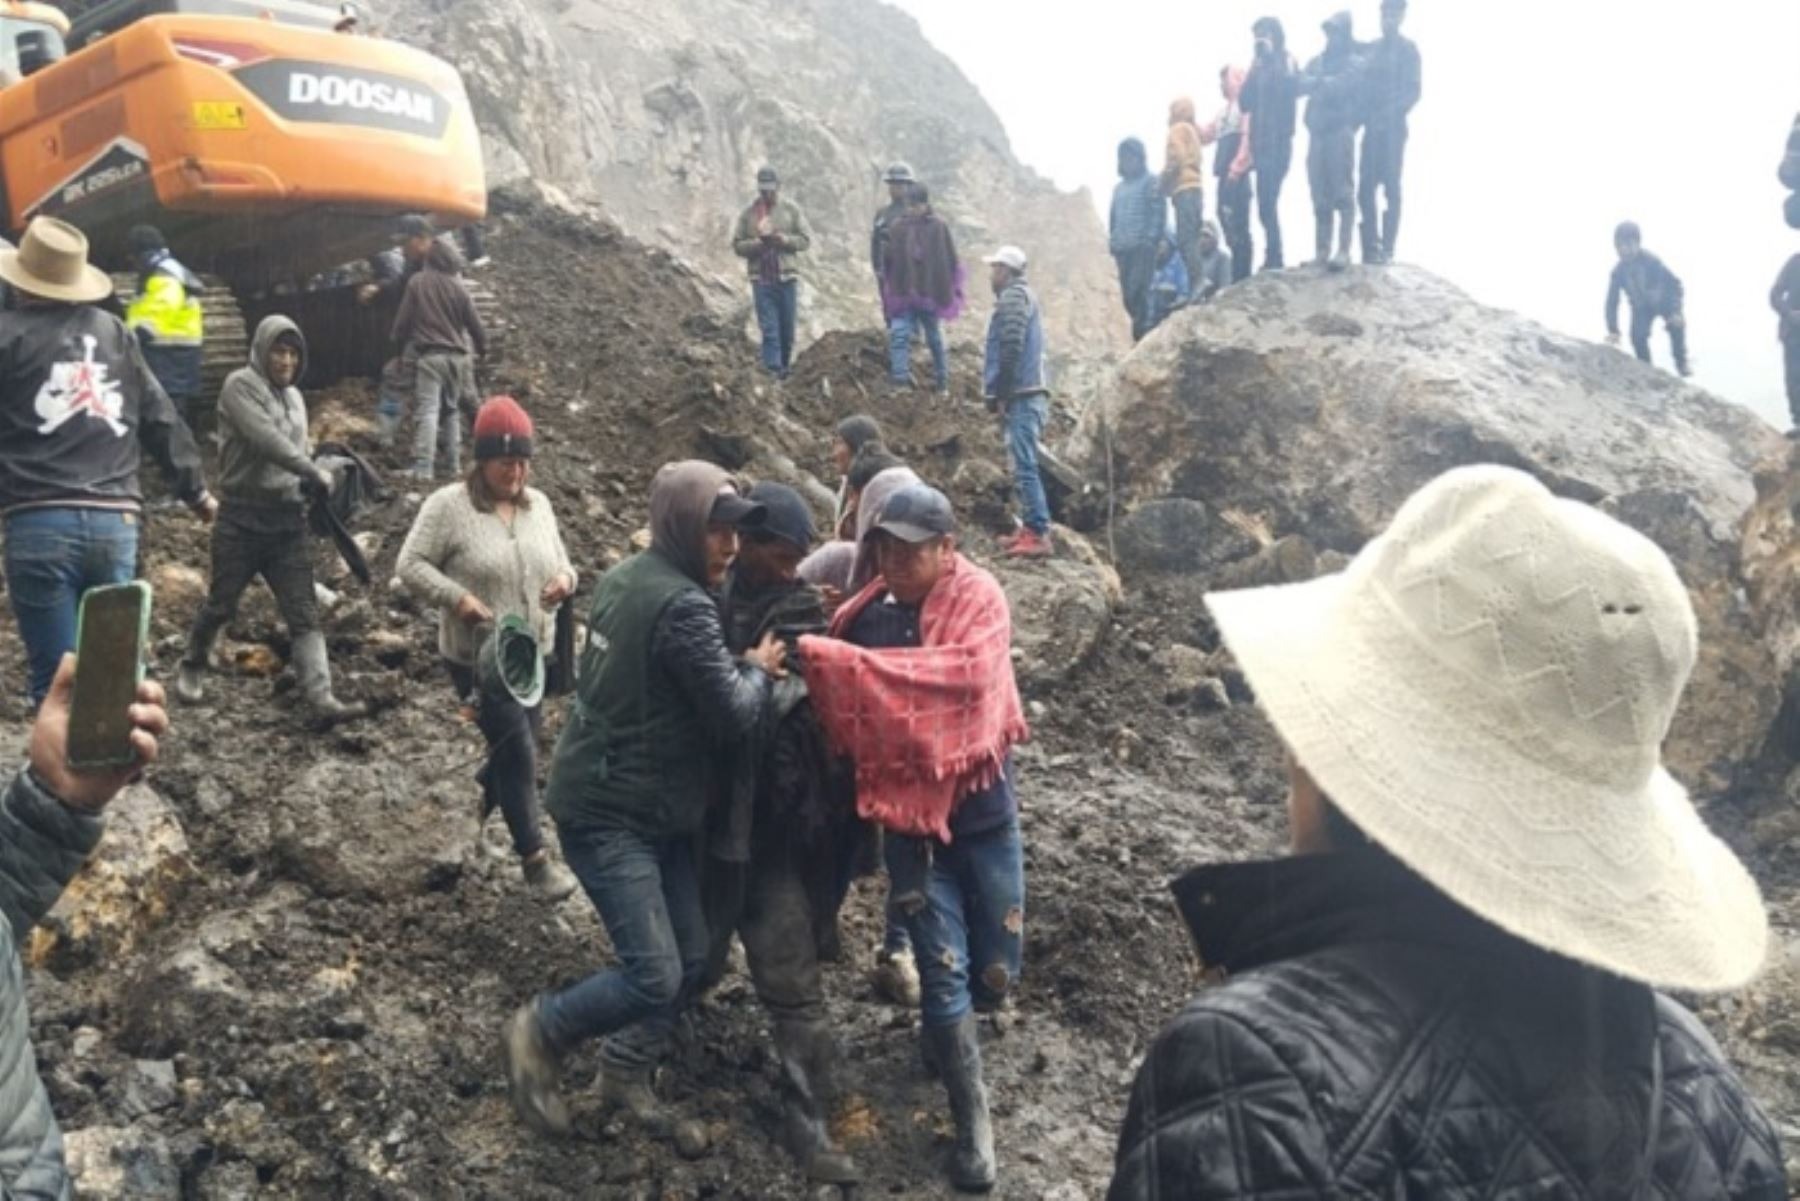 Sanos y salvos: más de 12 horas duró rescate de mineros en Quiruvilca, La Libertad